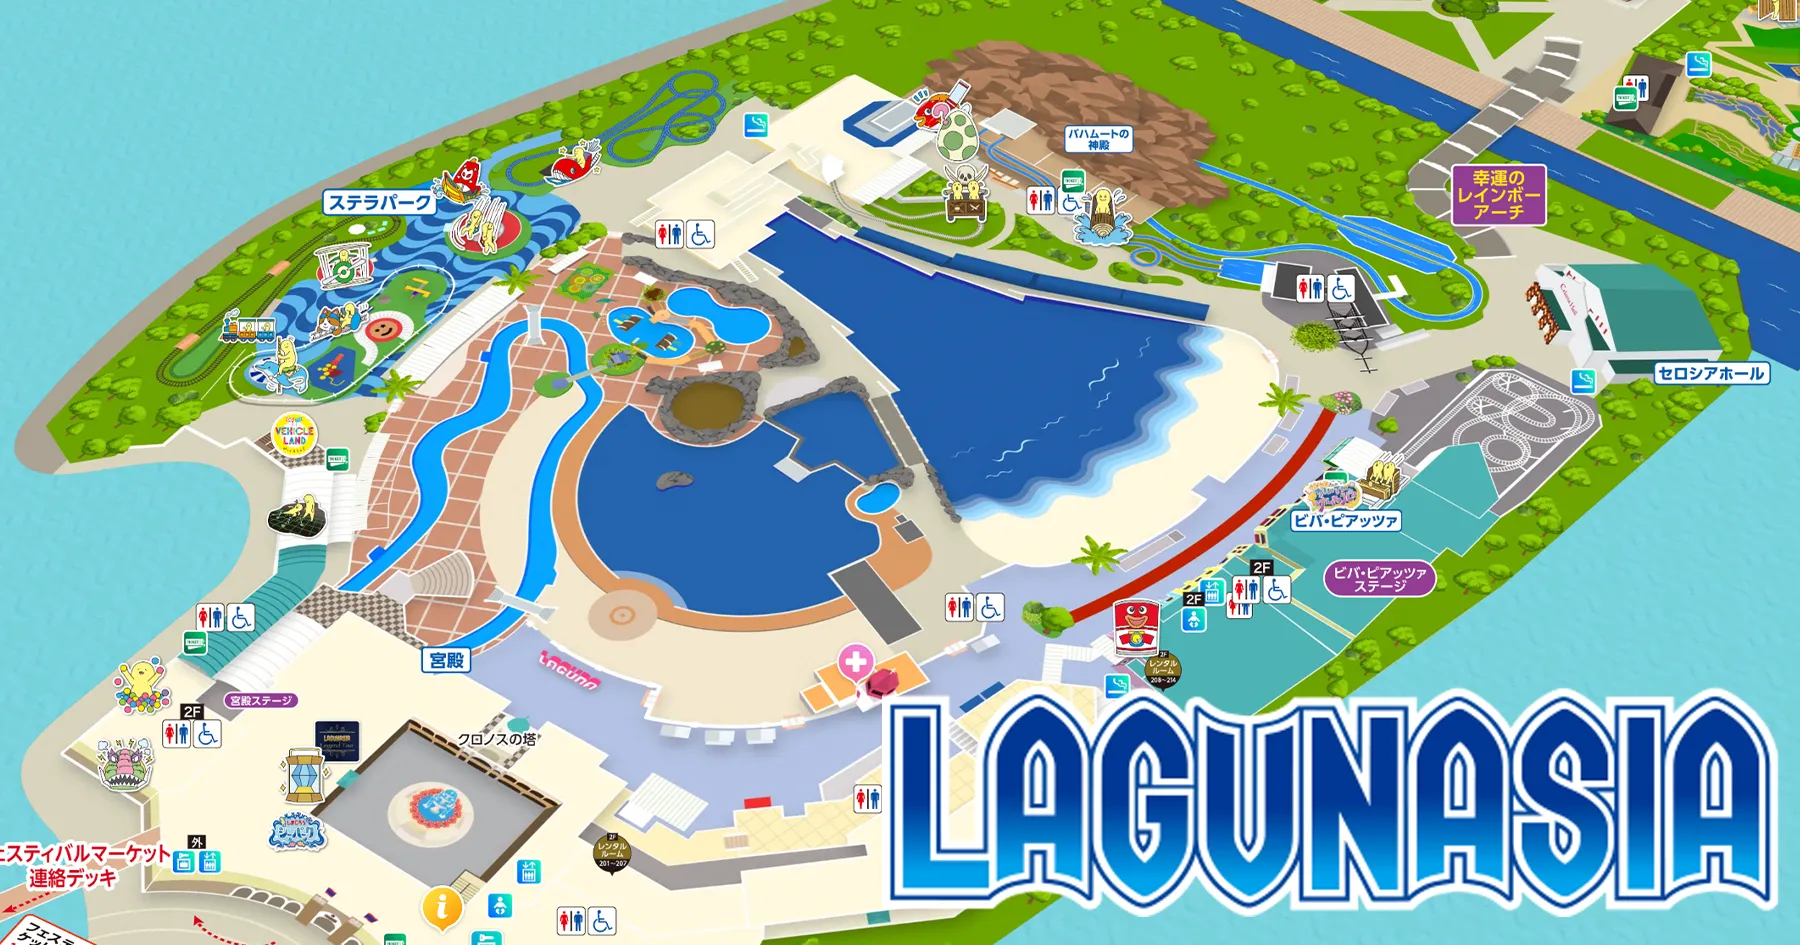 レジャー施設のガイドマップをデジタル化する「プラチナパーク」愛知県の複合型リゾート「ラグーナテンボス」が導入！